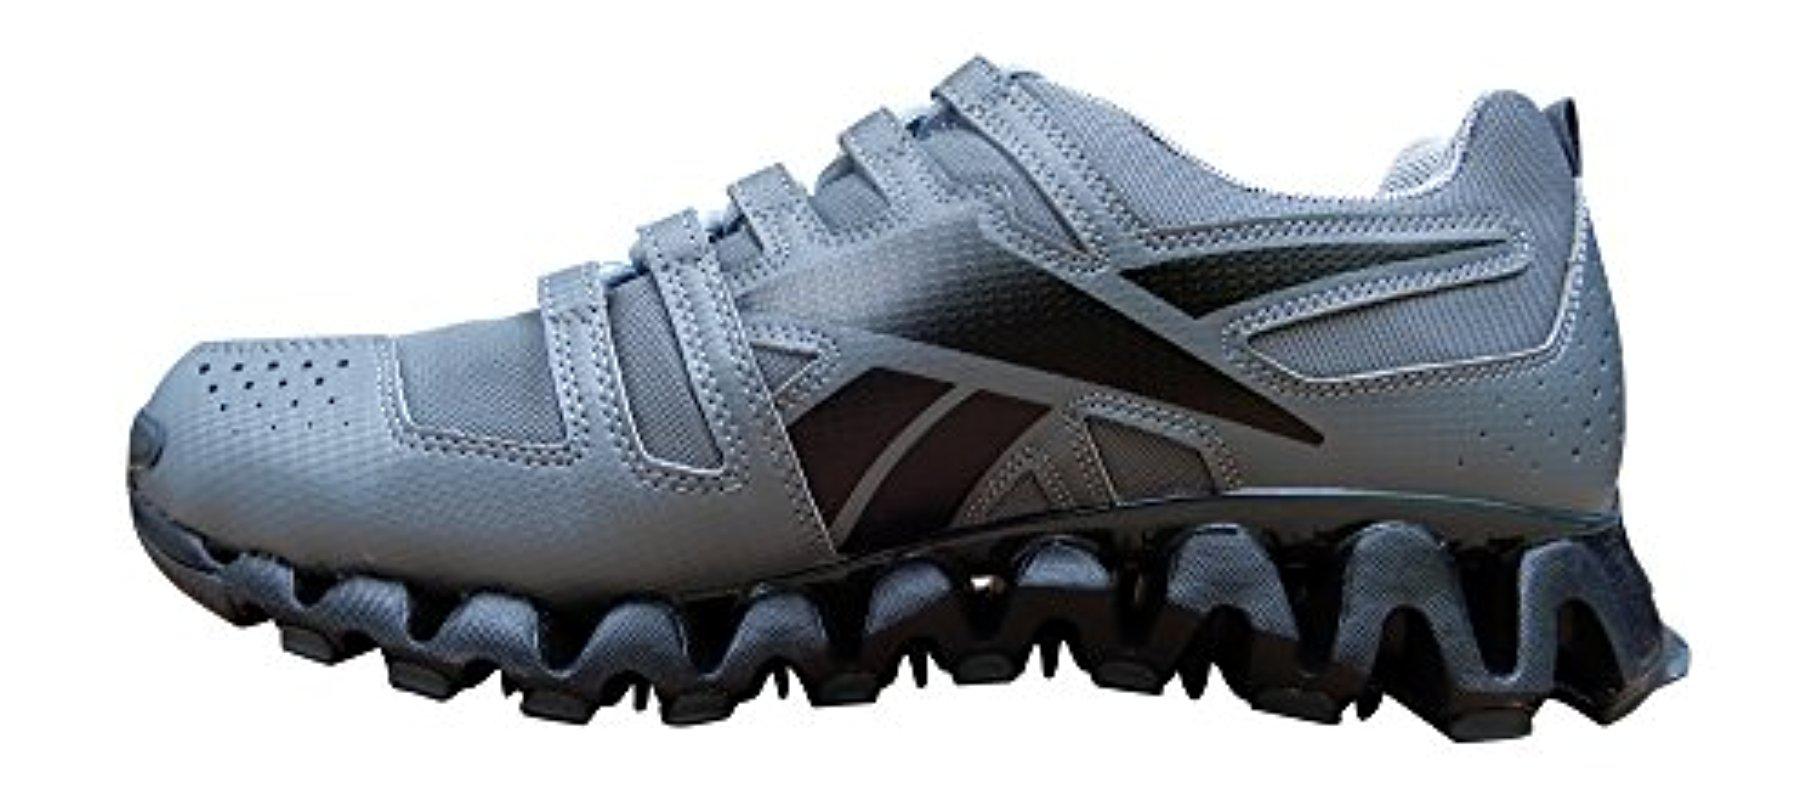 Reebok Zigwild Tr 2-m Running Shoes in 